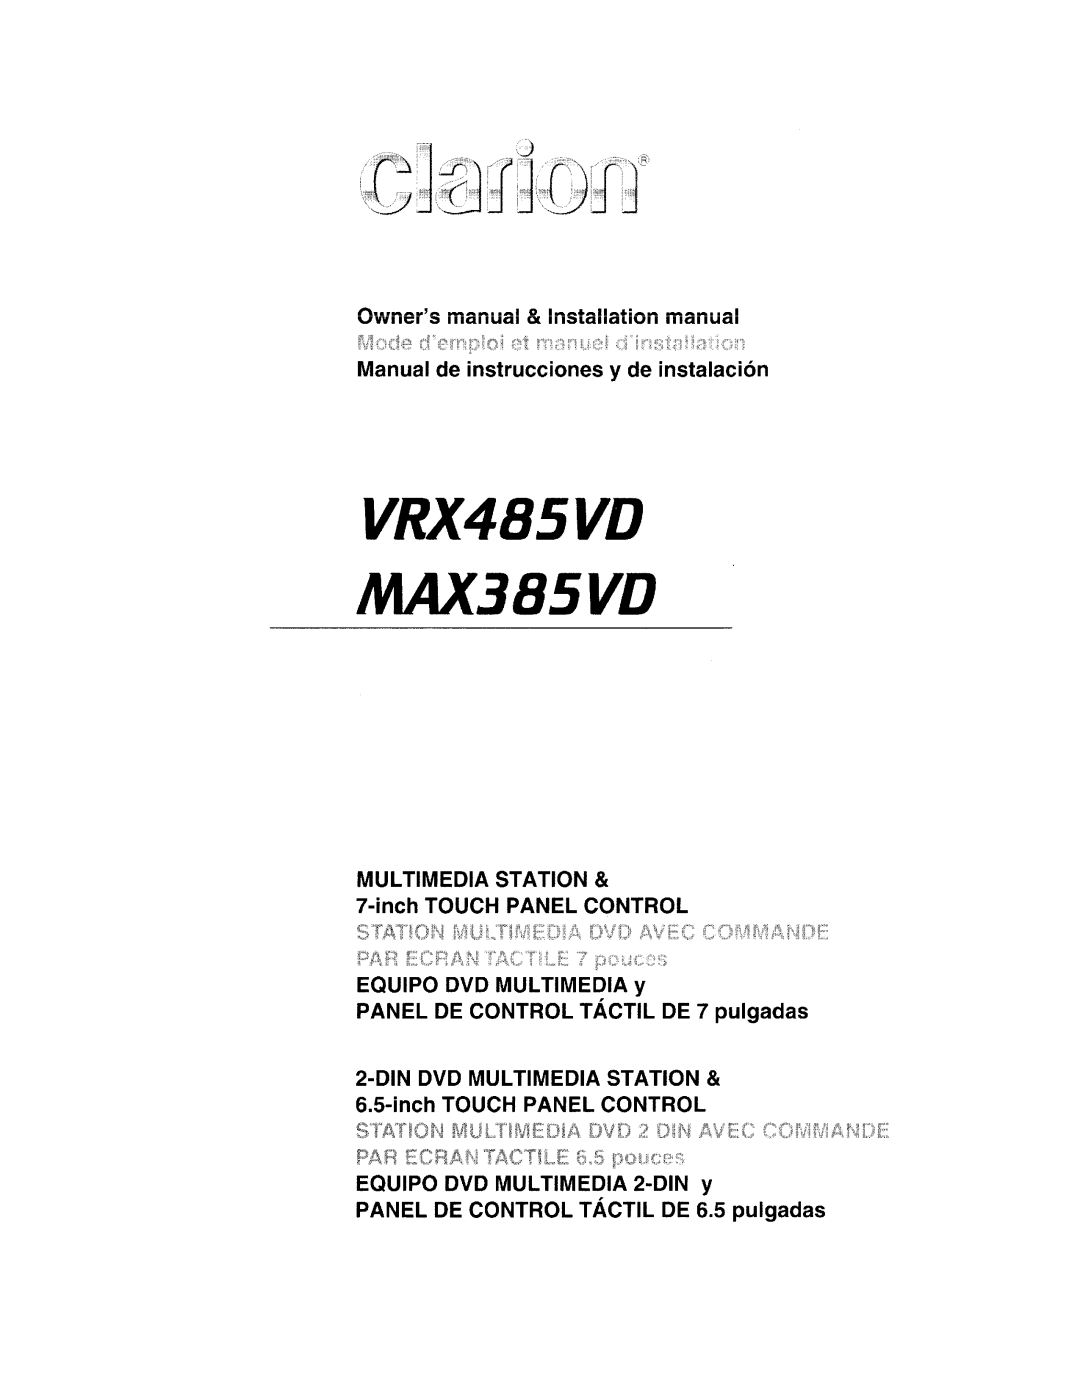 Clarion installation manual VRX485VD MAX385VD, Owneismanual & Installation manual 